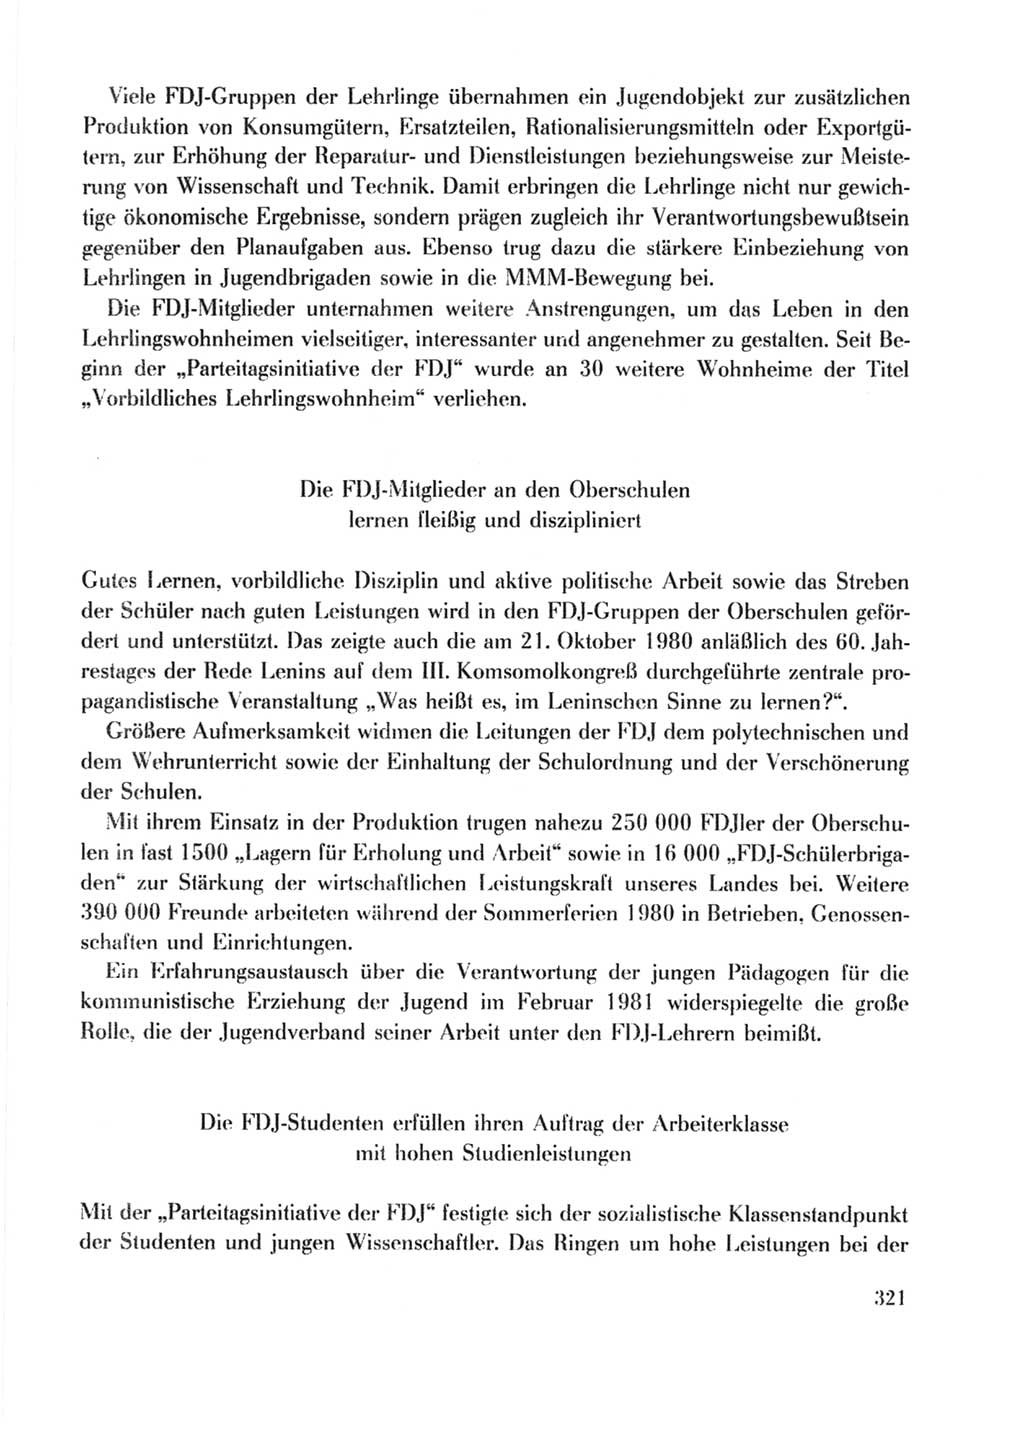 Protokoll der Verhandlungen des Ⅹ. Parteitages der Sozialistischen Einheitspartei Deutschlands (SED) [Deutsche Demokratische Republik (DDR)] 1981, Band 2, Seite 321 (Prot. Verh. Ⅹ. PT SED DDR 1981, Bd. 2, S. 321)